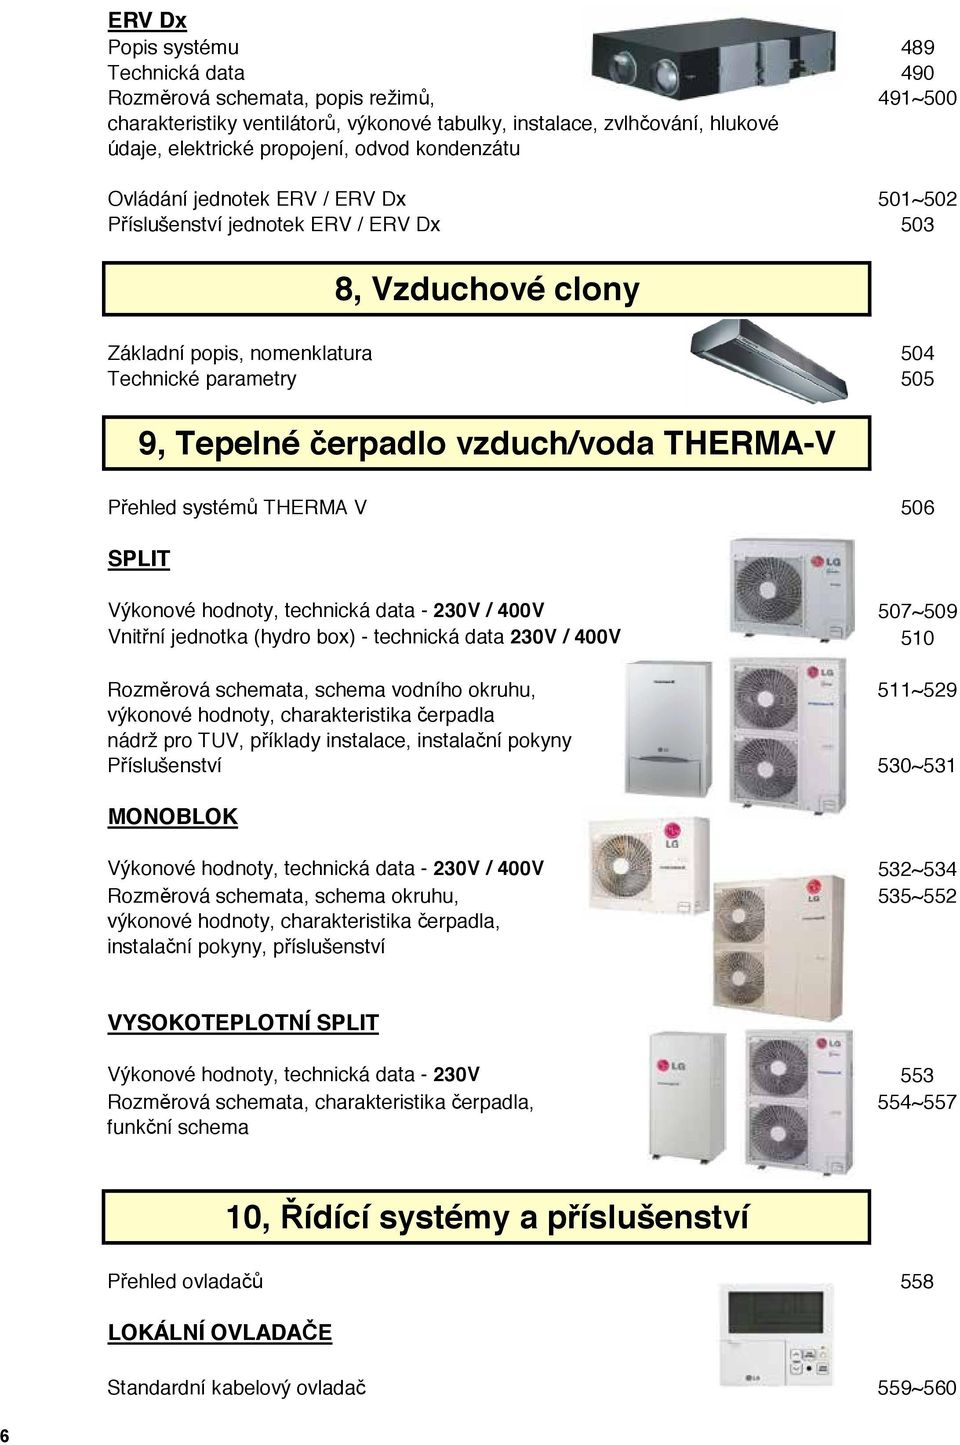 THERMA-V Přehled systémů THERMA V 506 SPLIT Výkonové hodnoty, technická data - 230V / 400V 507~509 Vnitřní jednotka (hydro box) - technická data 230V / 400V 510 Rozměrová schemata, schema vodního